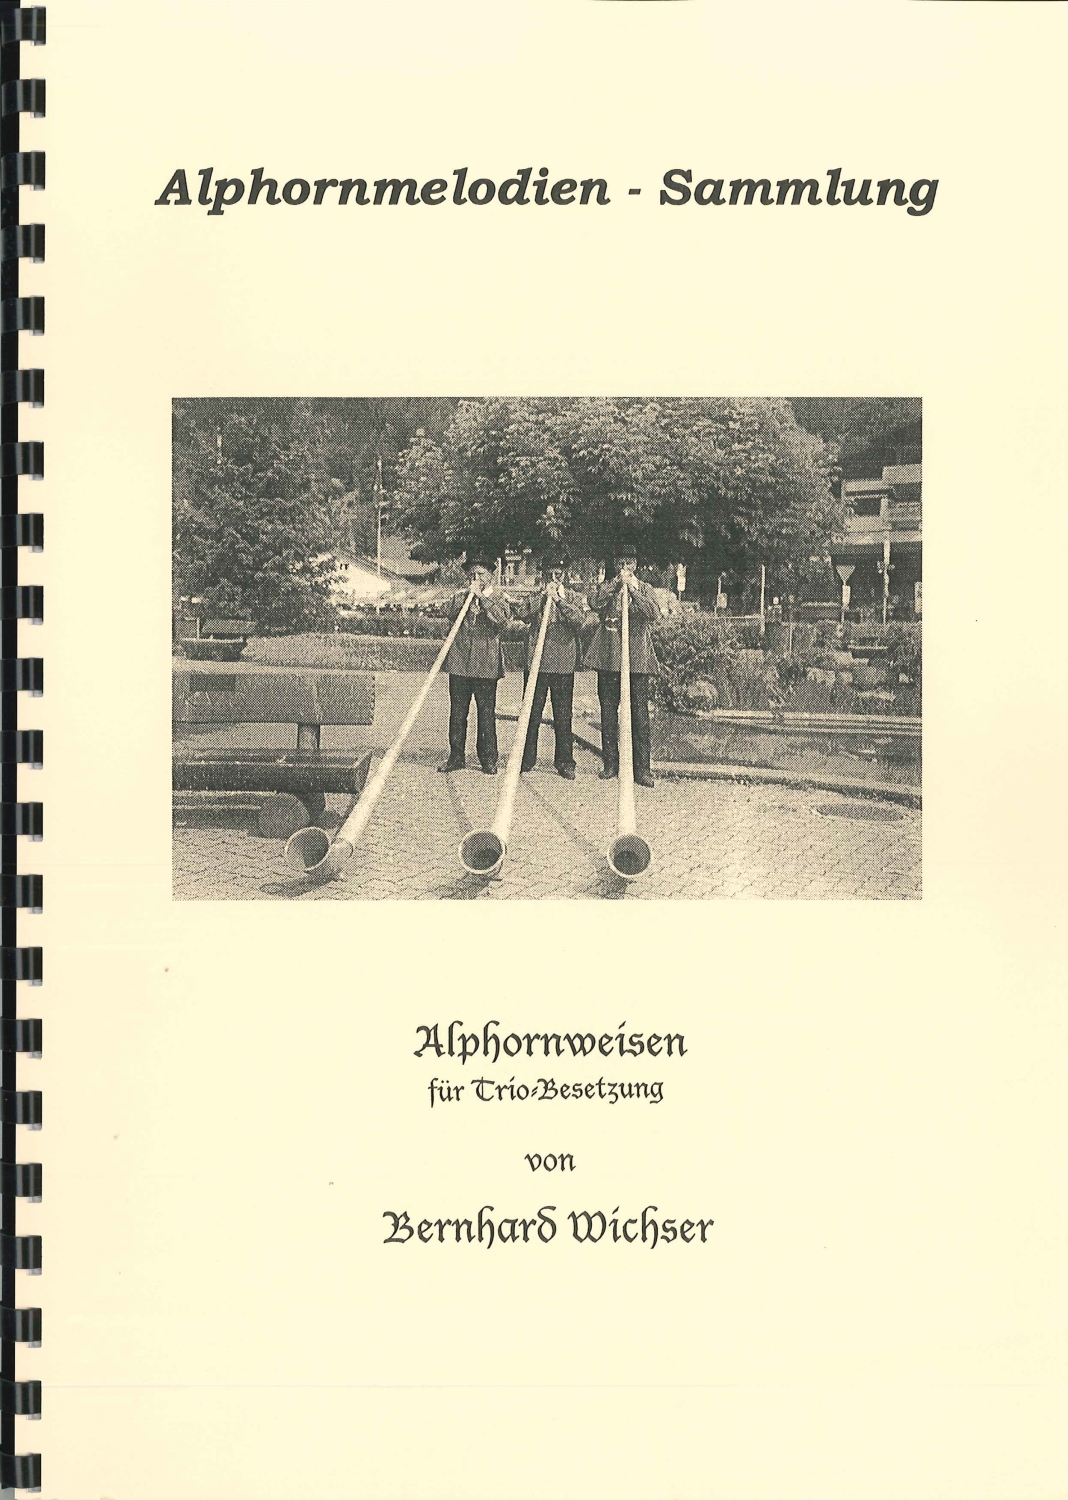 Bernhard-Wichser-Alphornmelodien-Sammlung-Band-1-u_0001.JPG